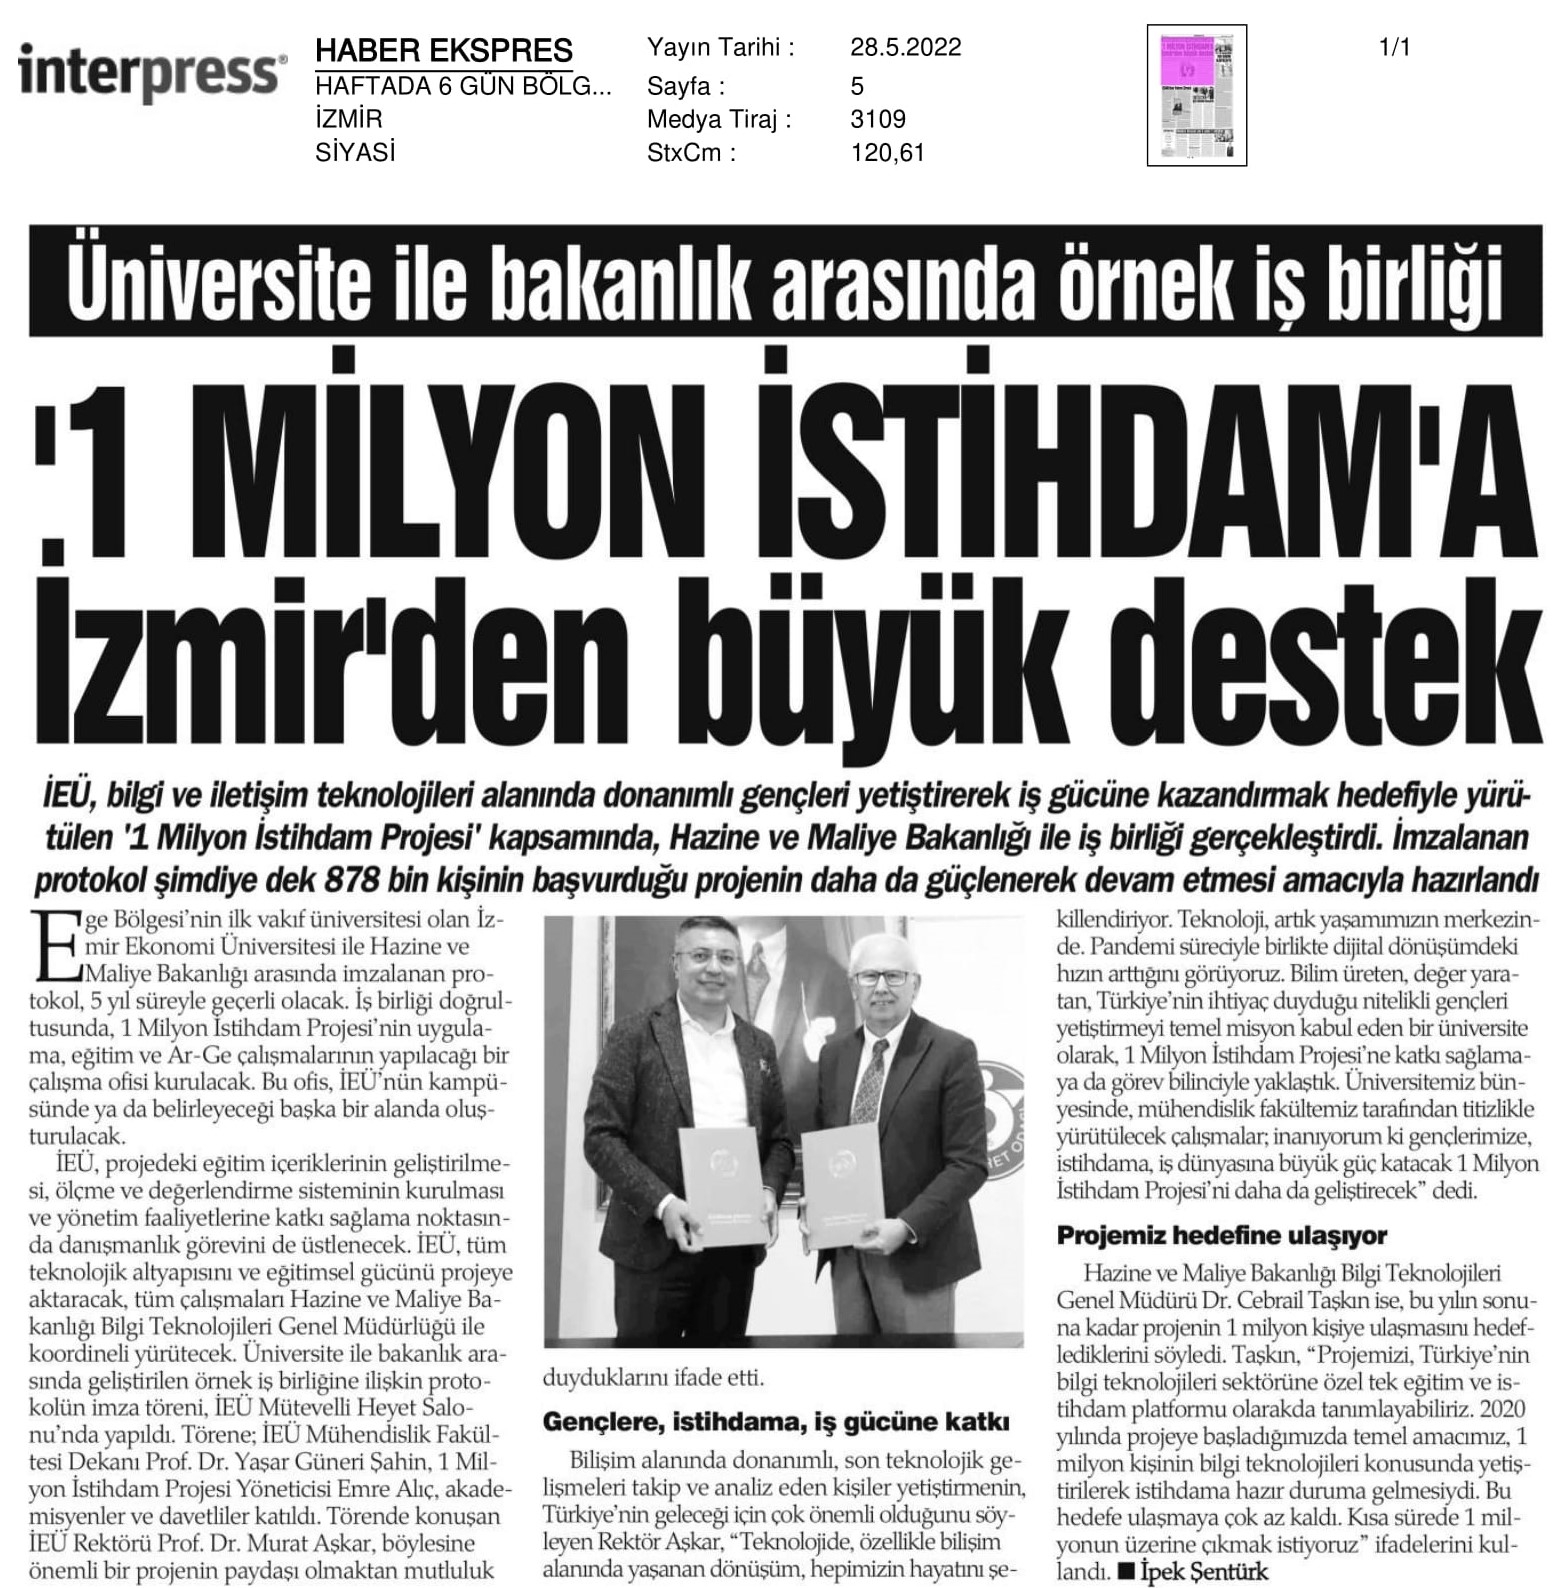 ‘1 milyon istihdama’ İzmir’den büyük destek